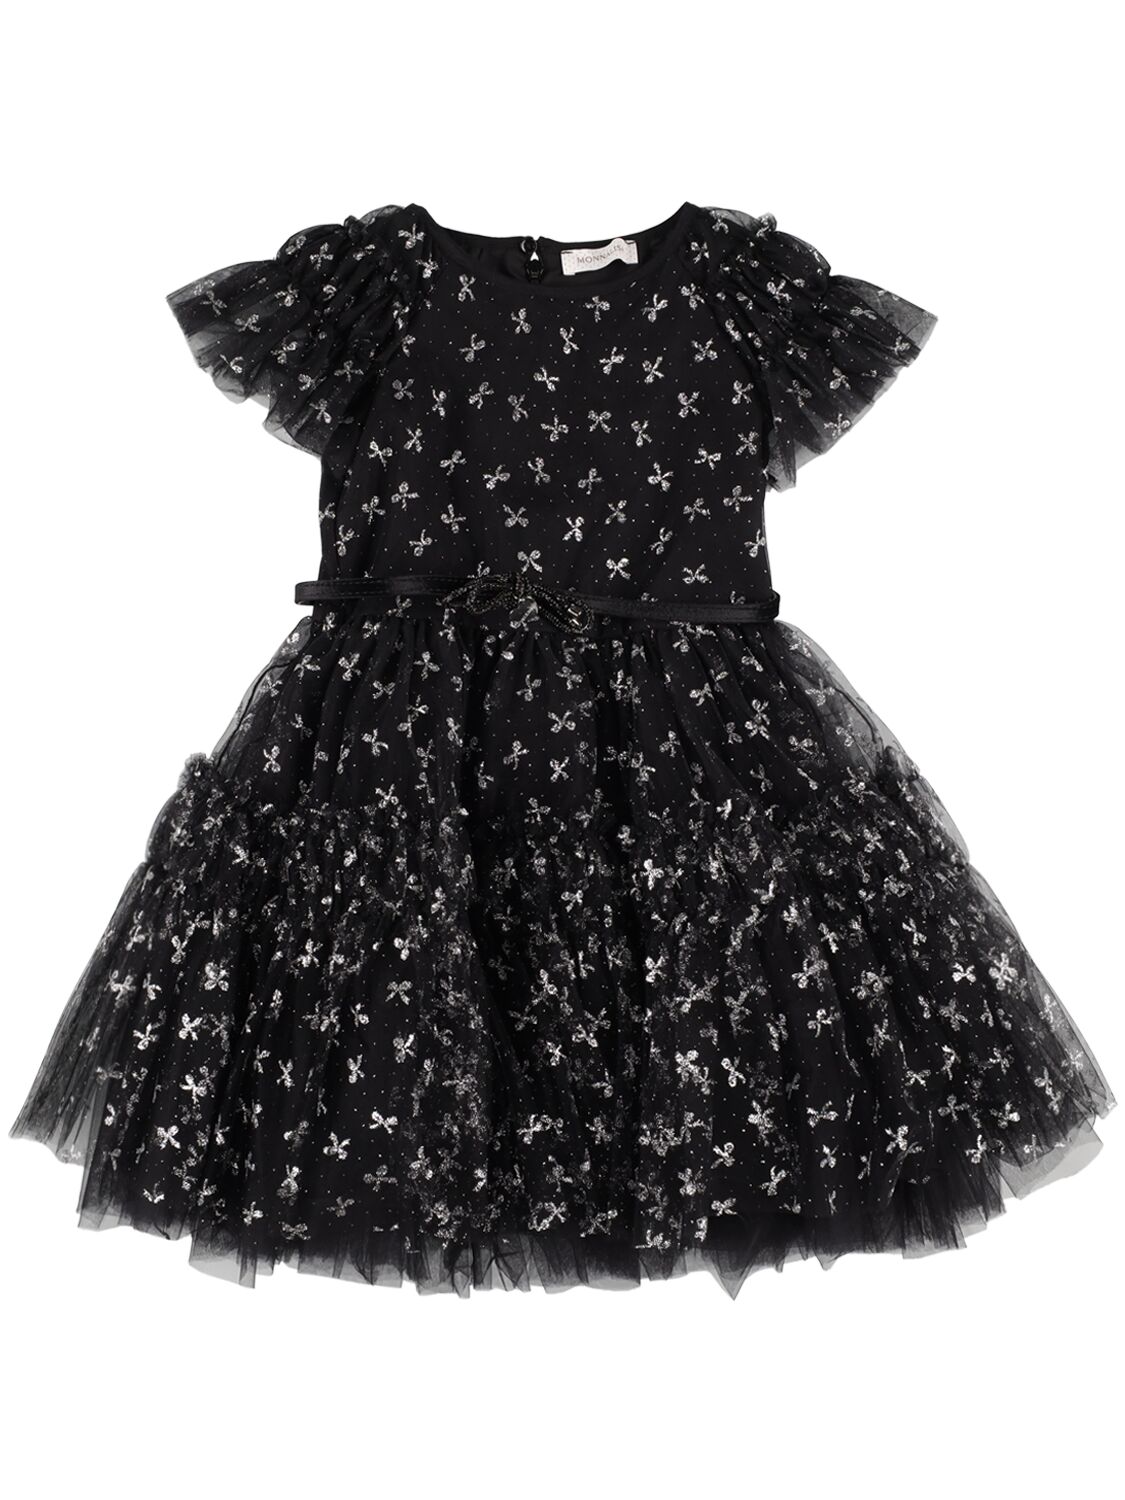 Monnalisa Kids' Tulle Dress W/ Glitter Bow In Black